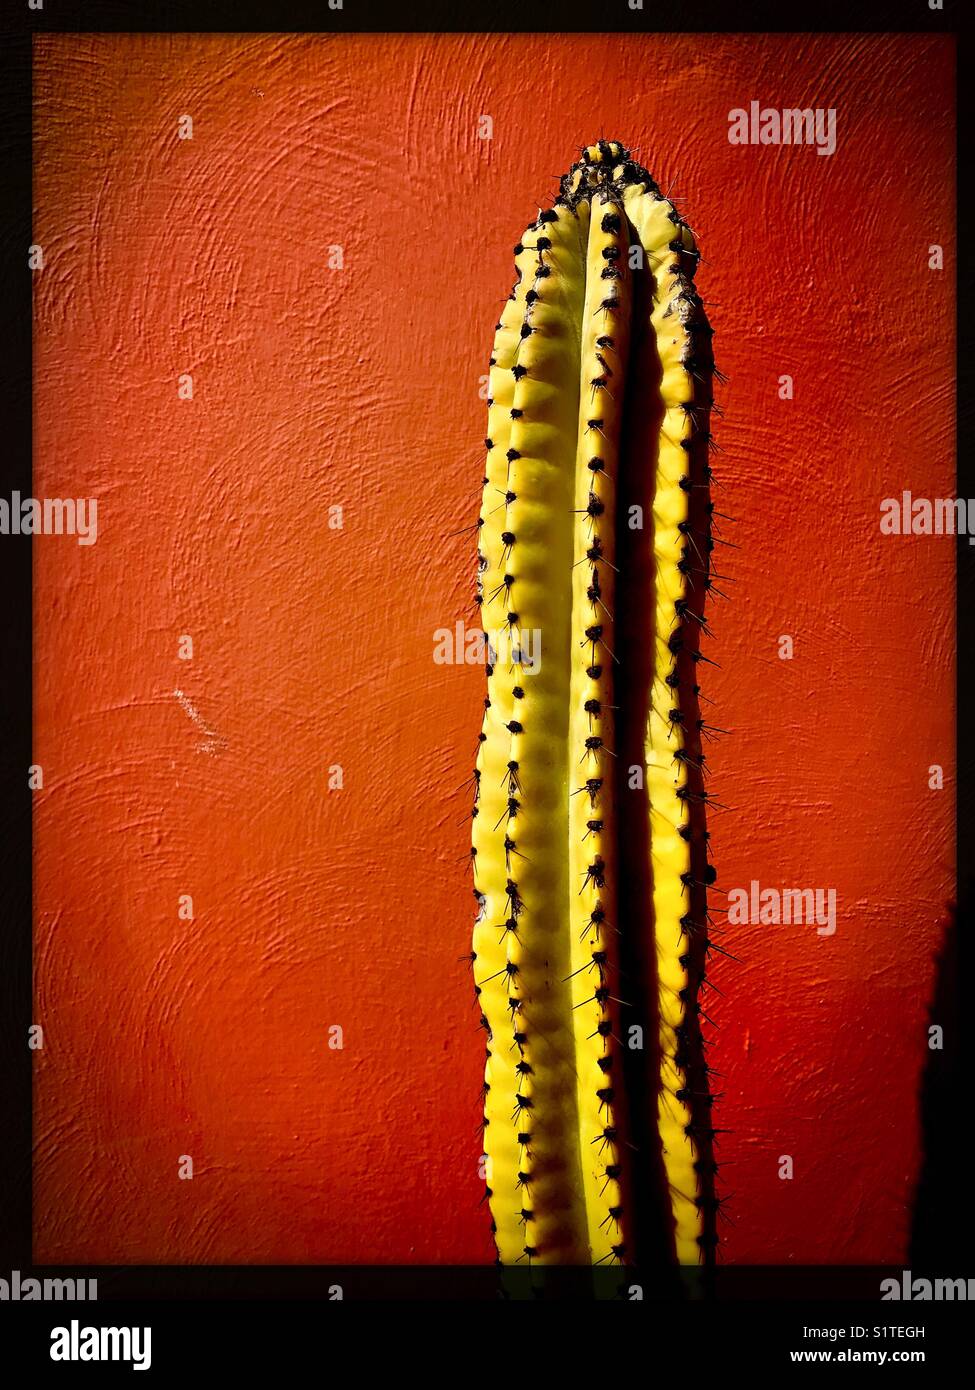 Uno alto e stretto, cactus pungenti si erge contro un muro rosso. Foto Stock